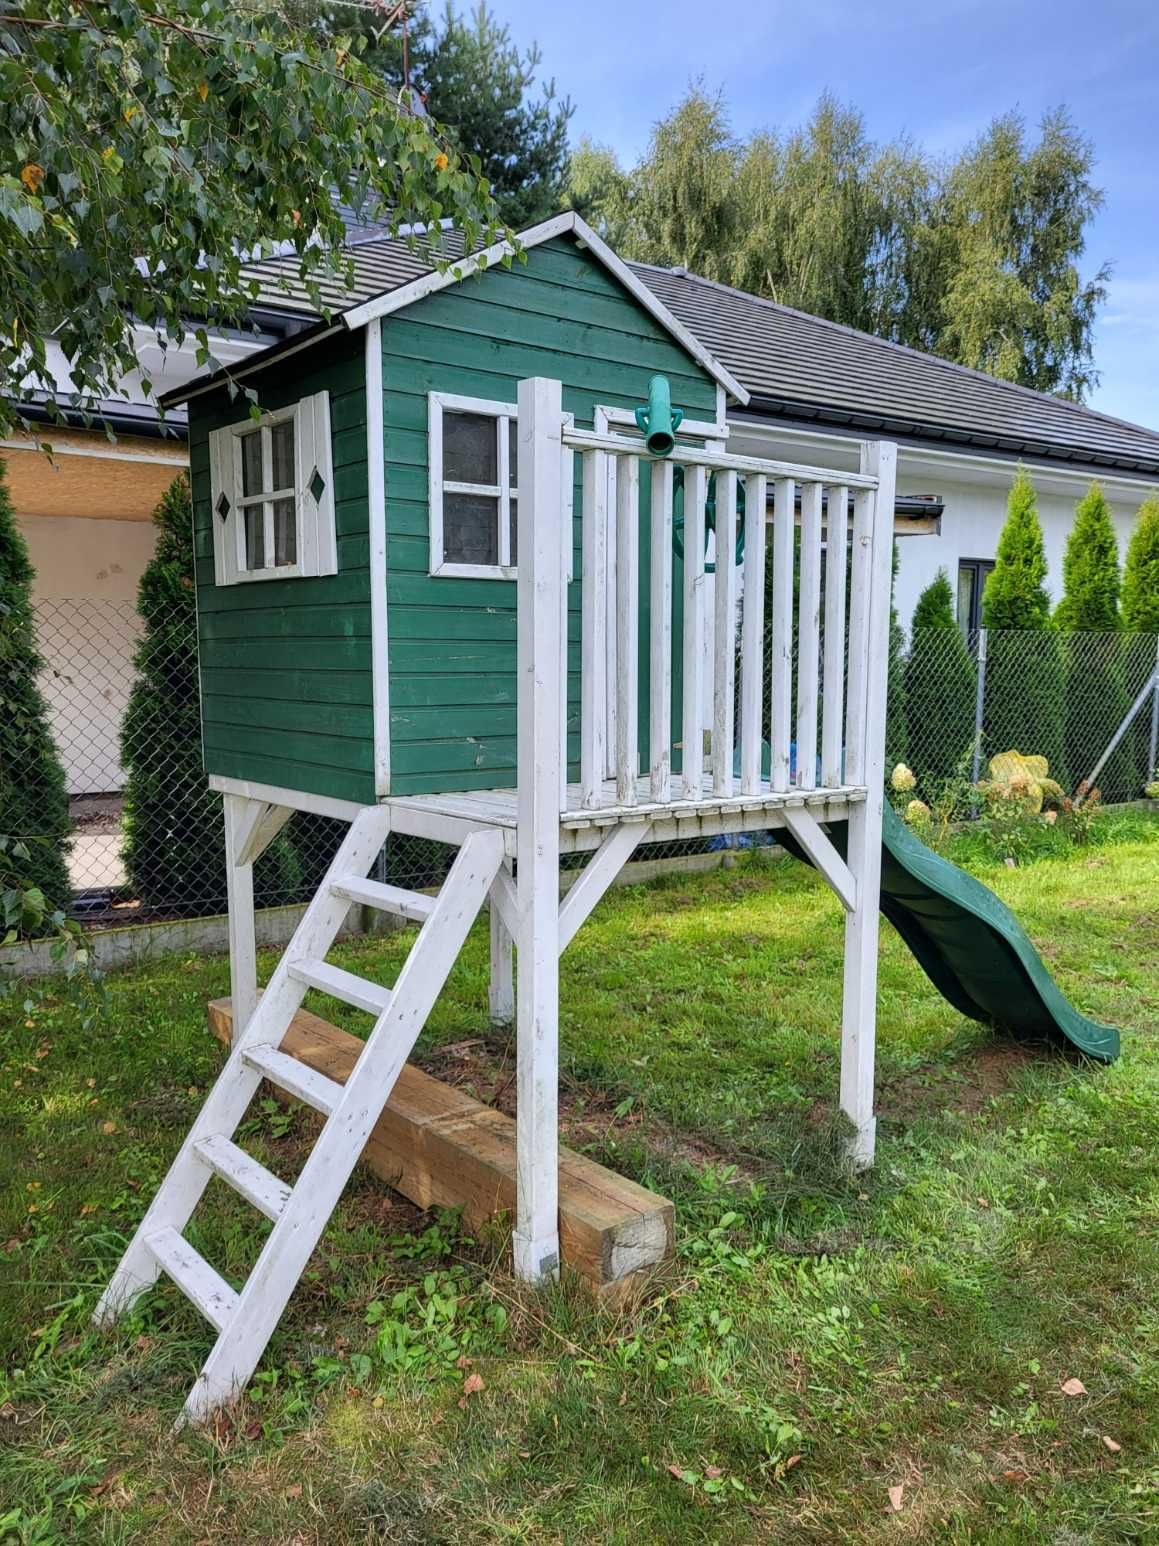 Domek drewniany ogrodowy dla dziecka - Sprzedam